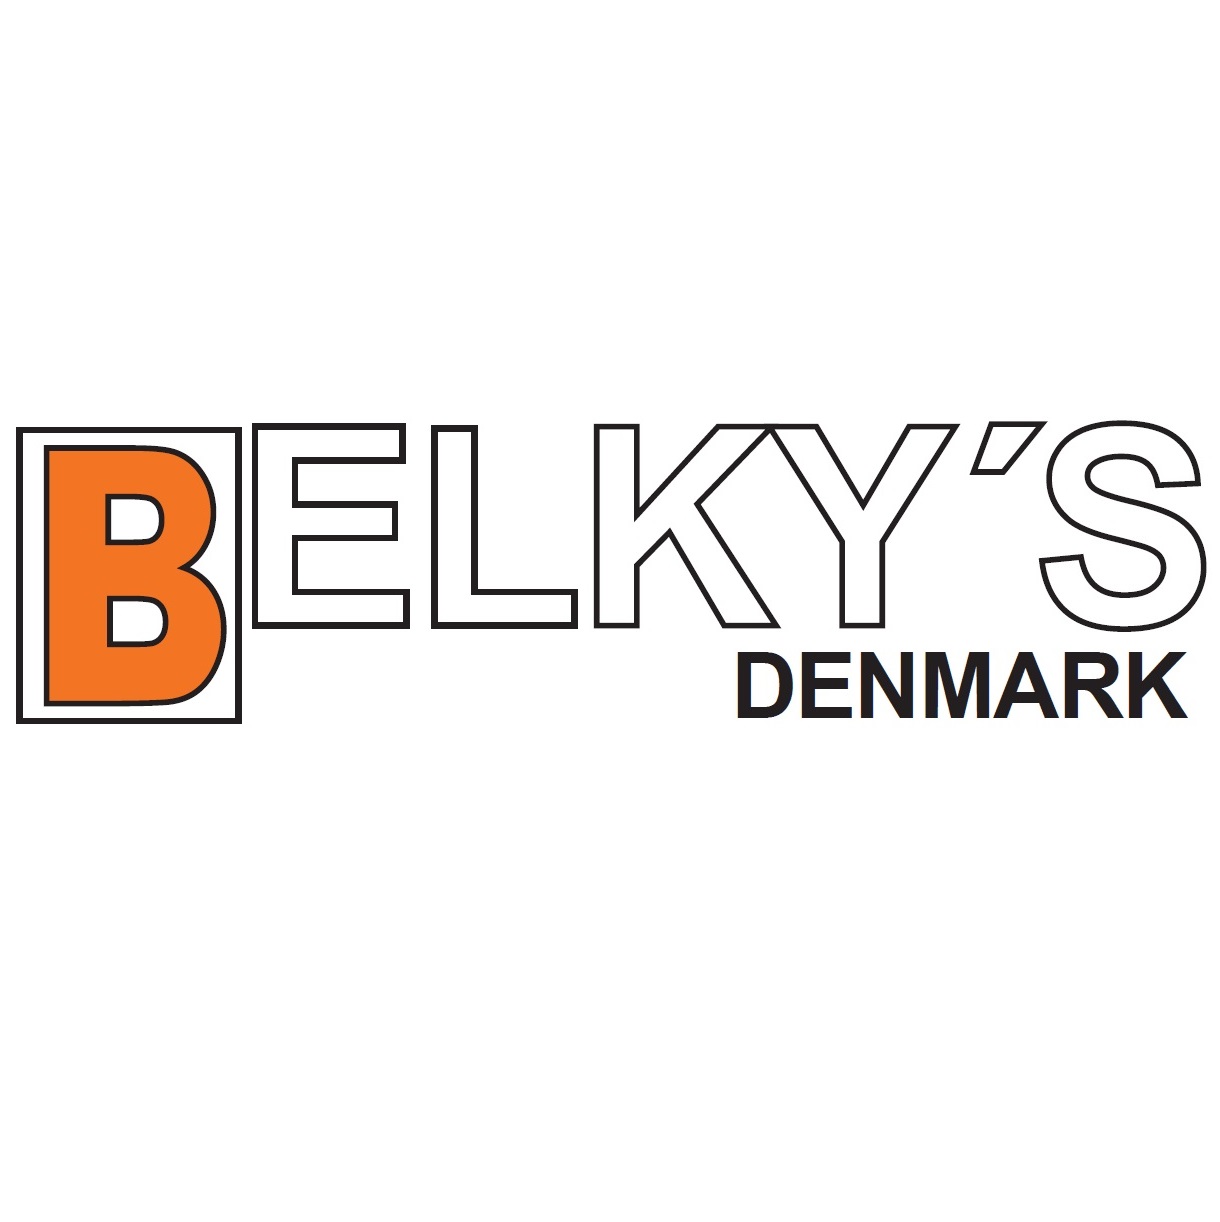 Belkys